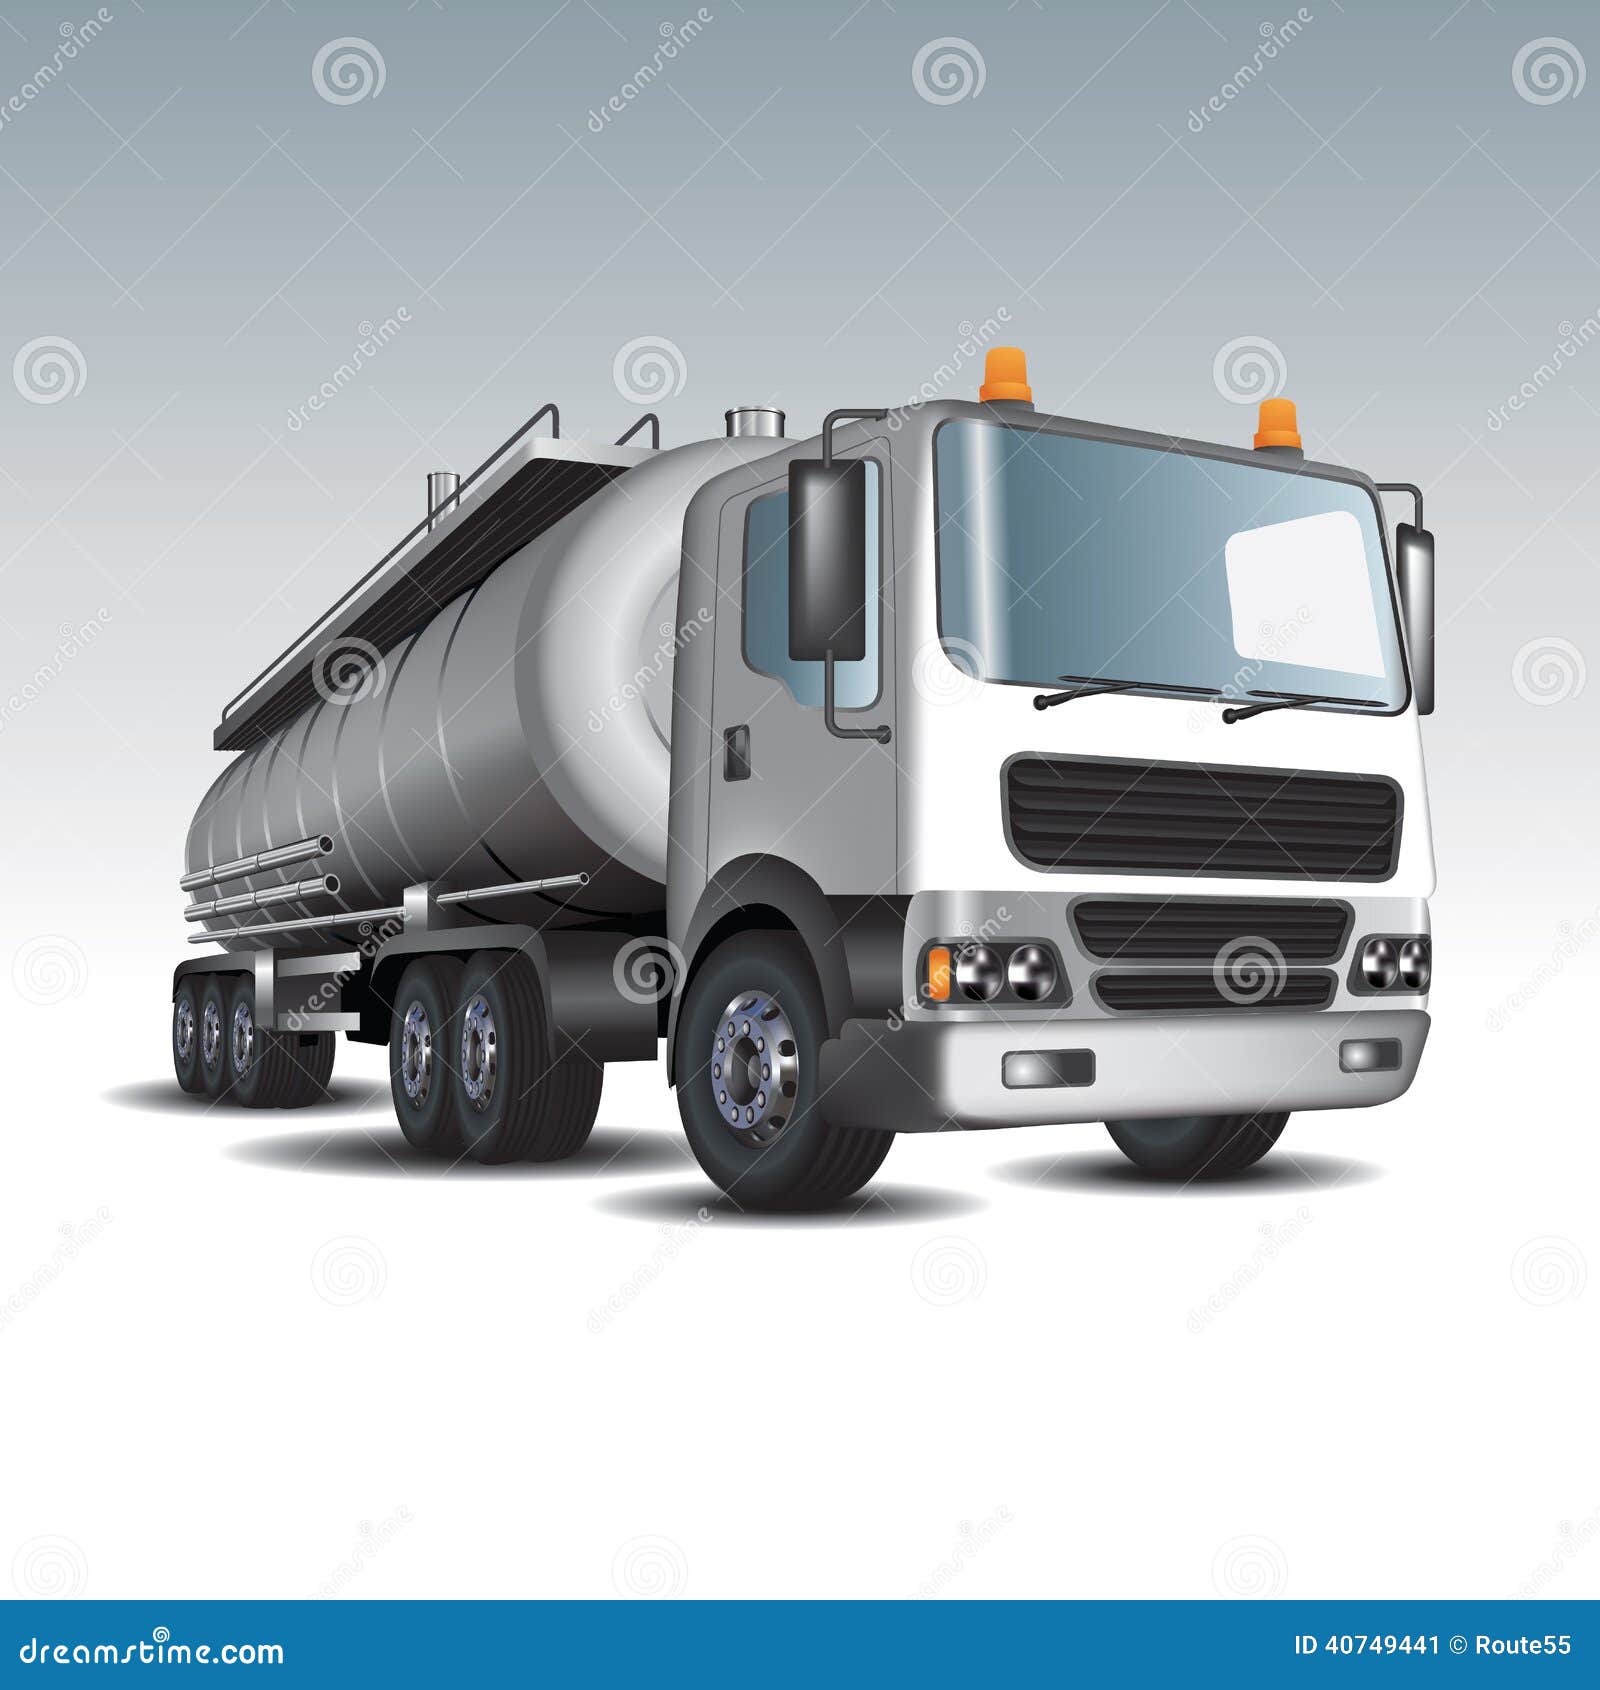 Gasoline tank truck stock vector. Illustration of industrial - 40749441